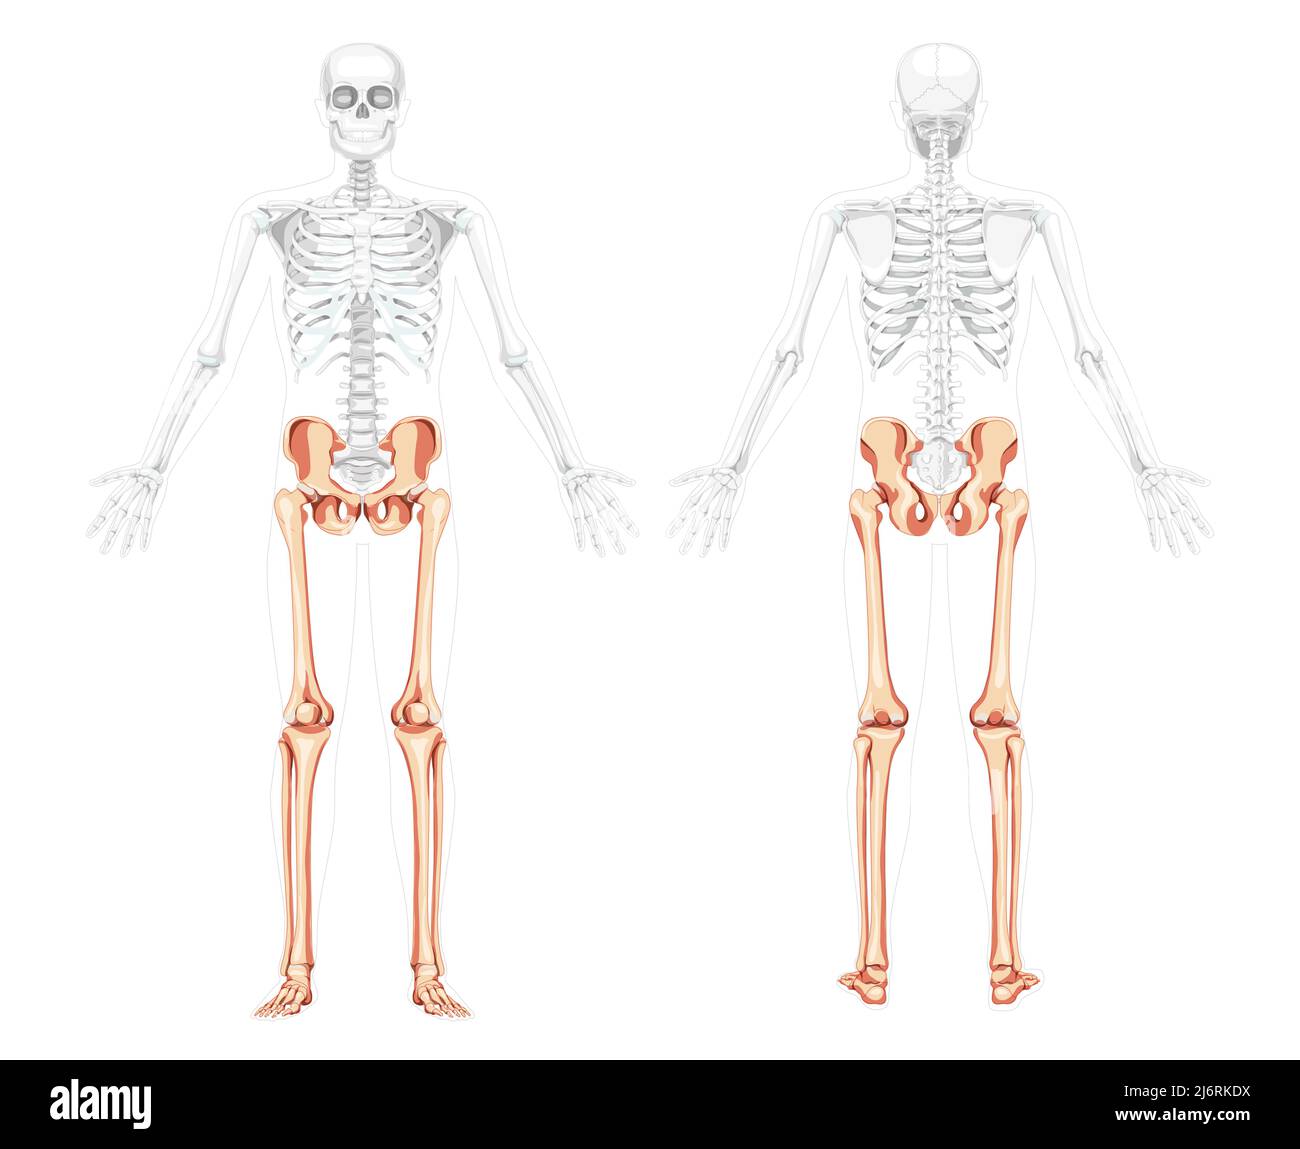 Arti inferiori la vista posteriore frontale dello scheletro con braccio laterale aperto pone una posizione del corpo parzialmente trasparente. Correzione anatomica del bacino umano con gambe, cosce, piedi, caviglie 3D rappresentazione grafica realistica del vettore piatto Illustrazione Vettoriale